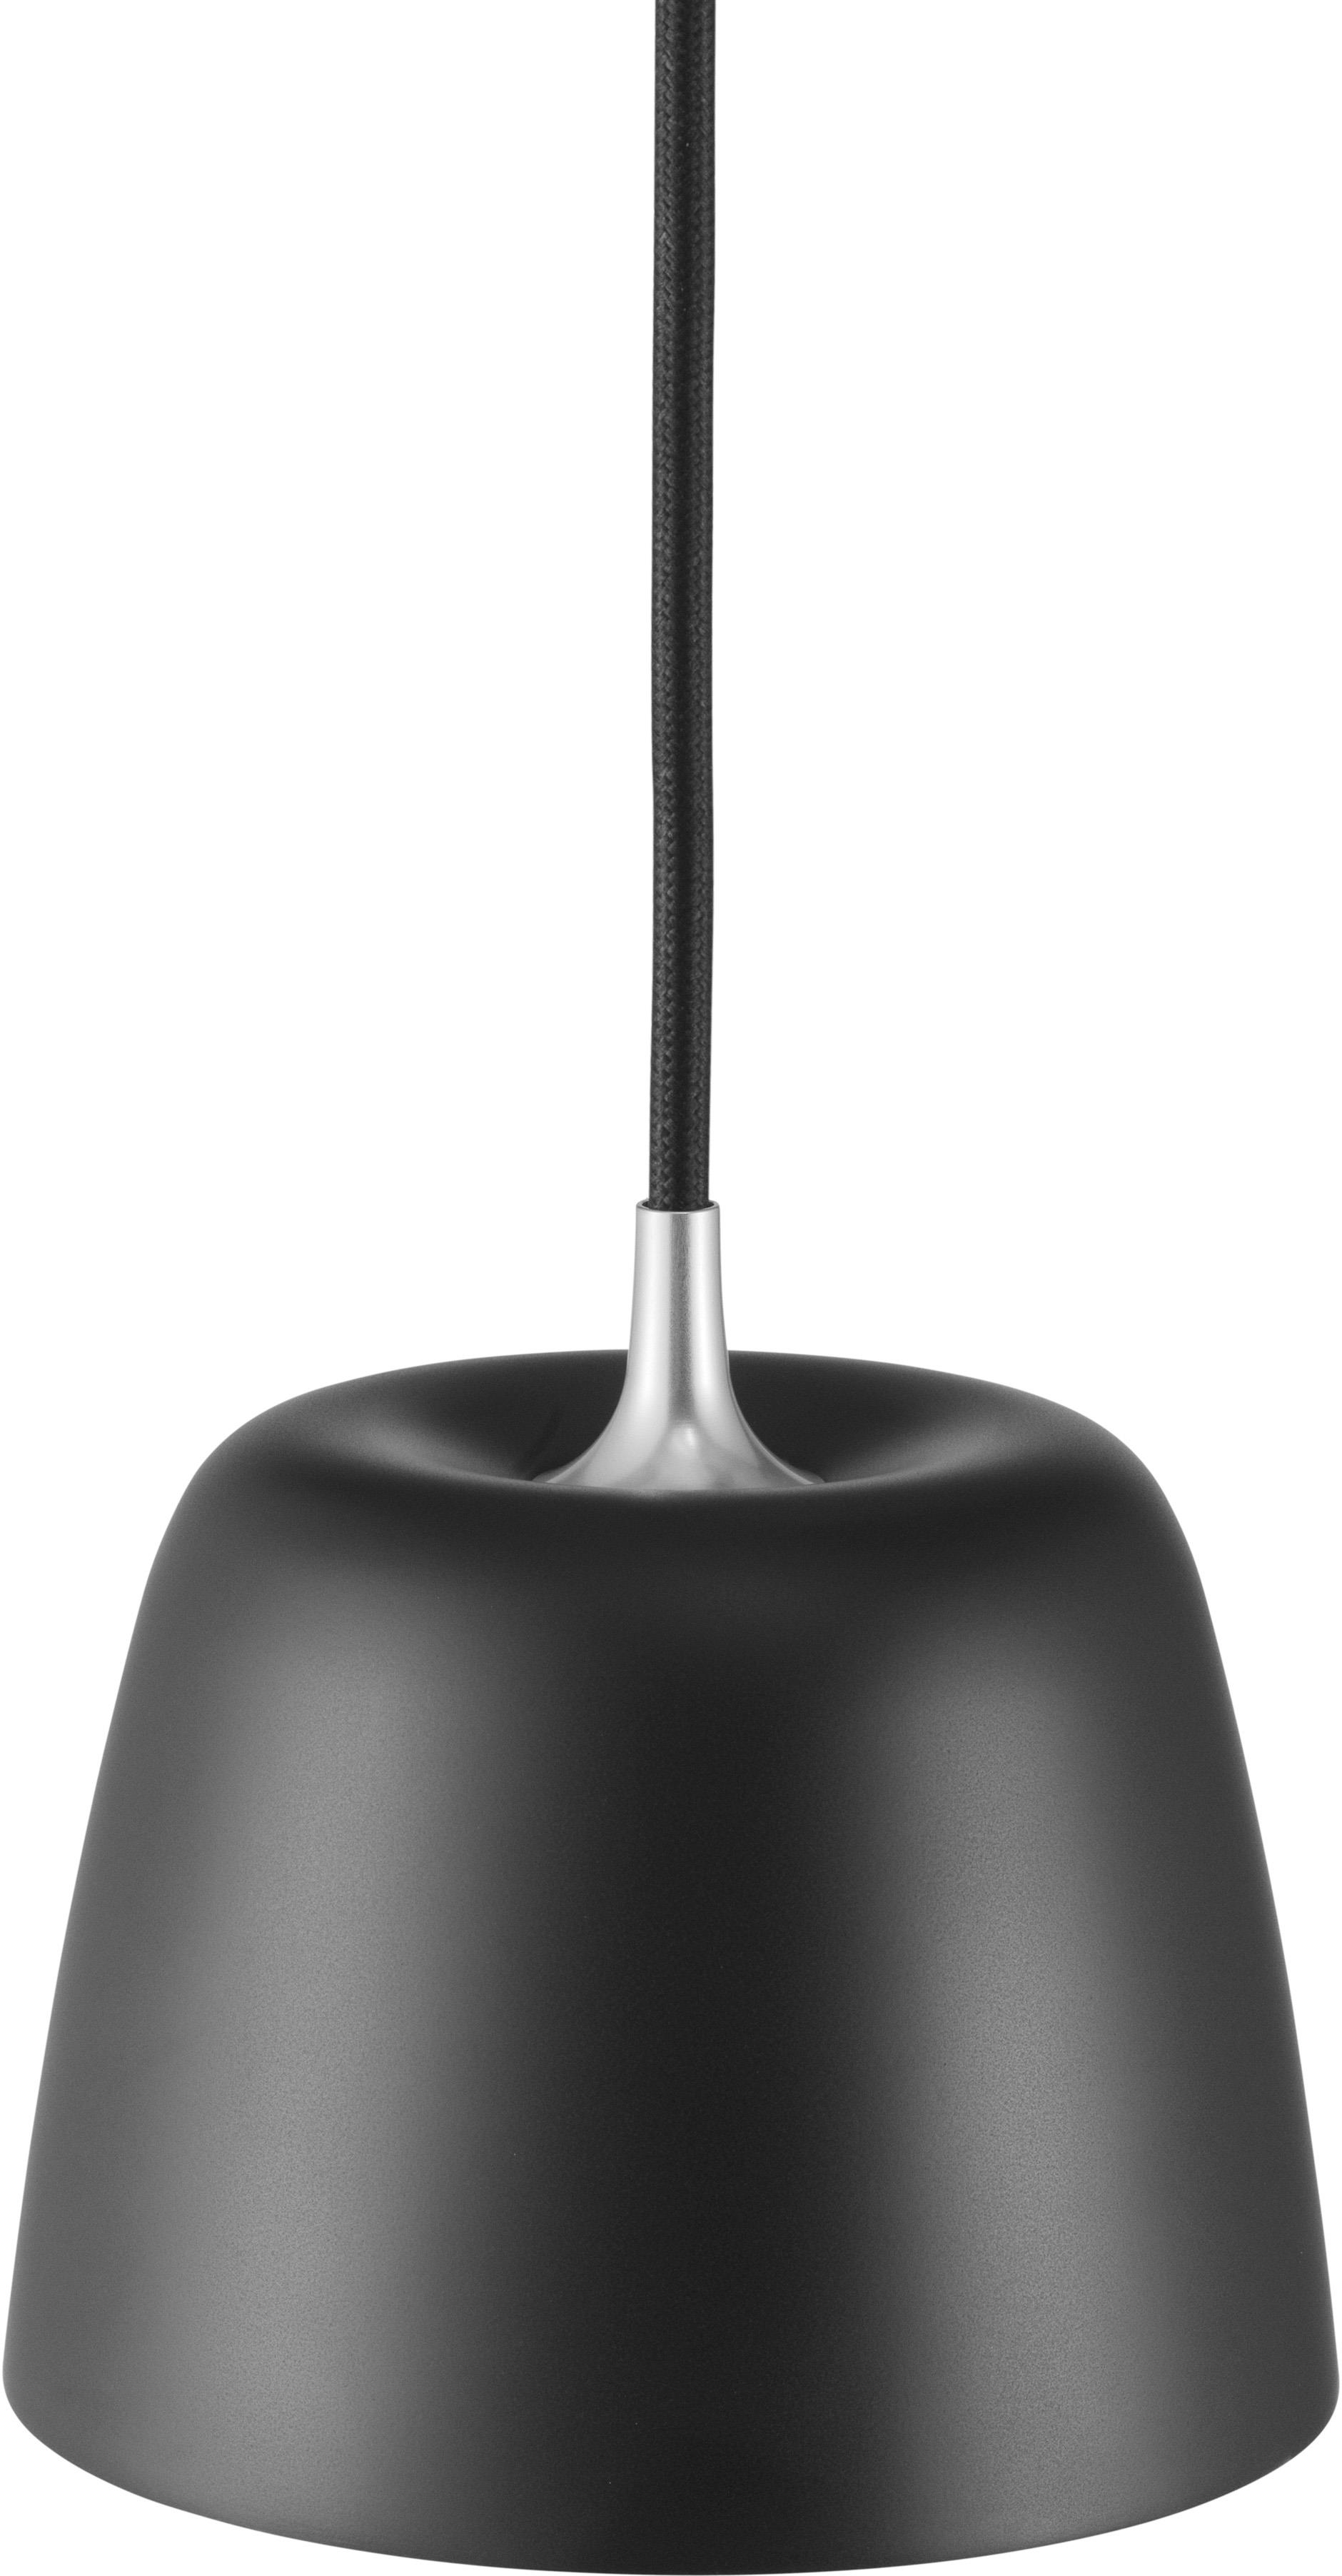 Tub Leuchte EU in Schwarz präsentiert im Onlineshop von KAQTU Design AG. Pendelleuchte ist von Normann Copenhagen